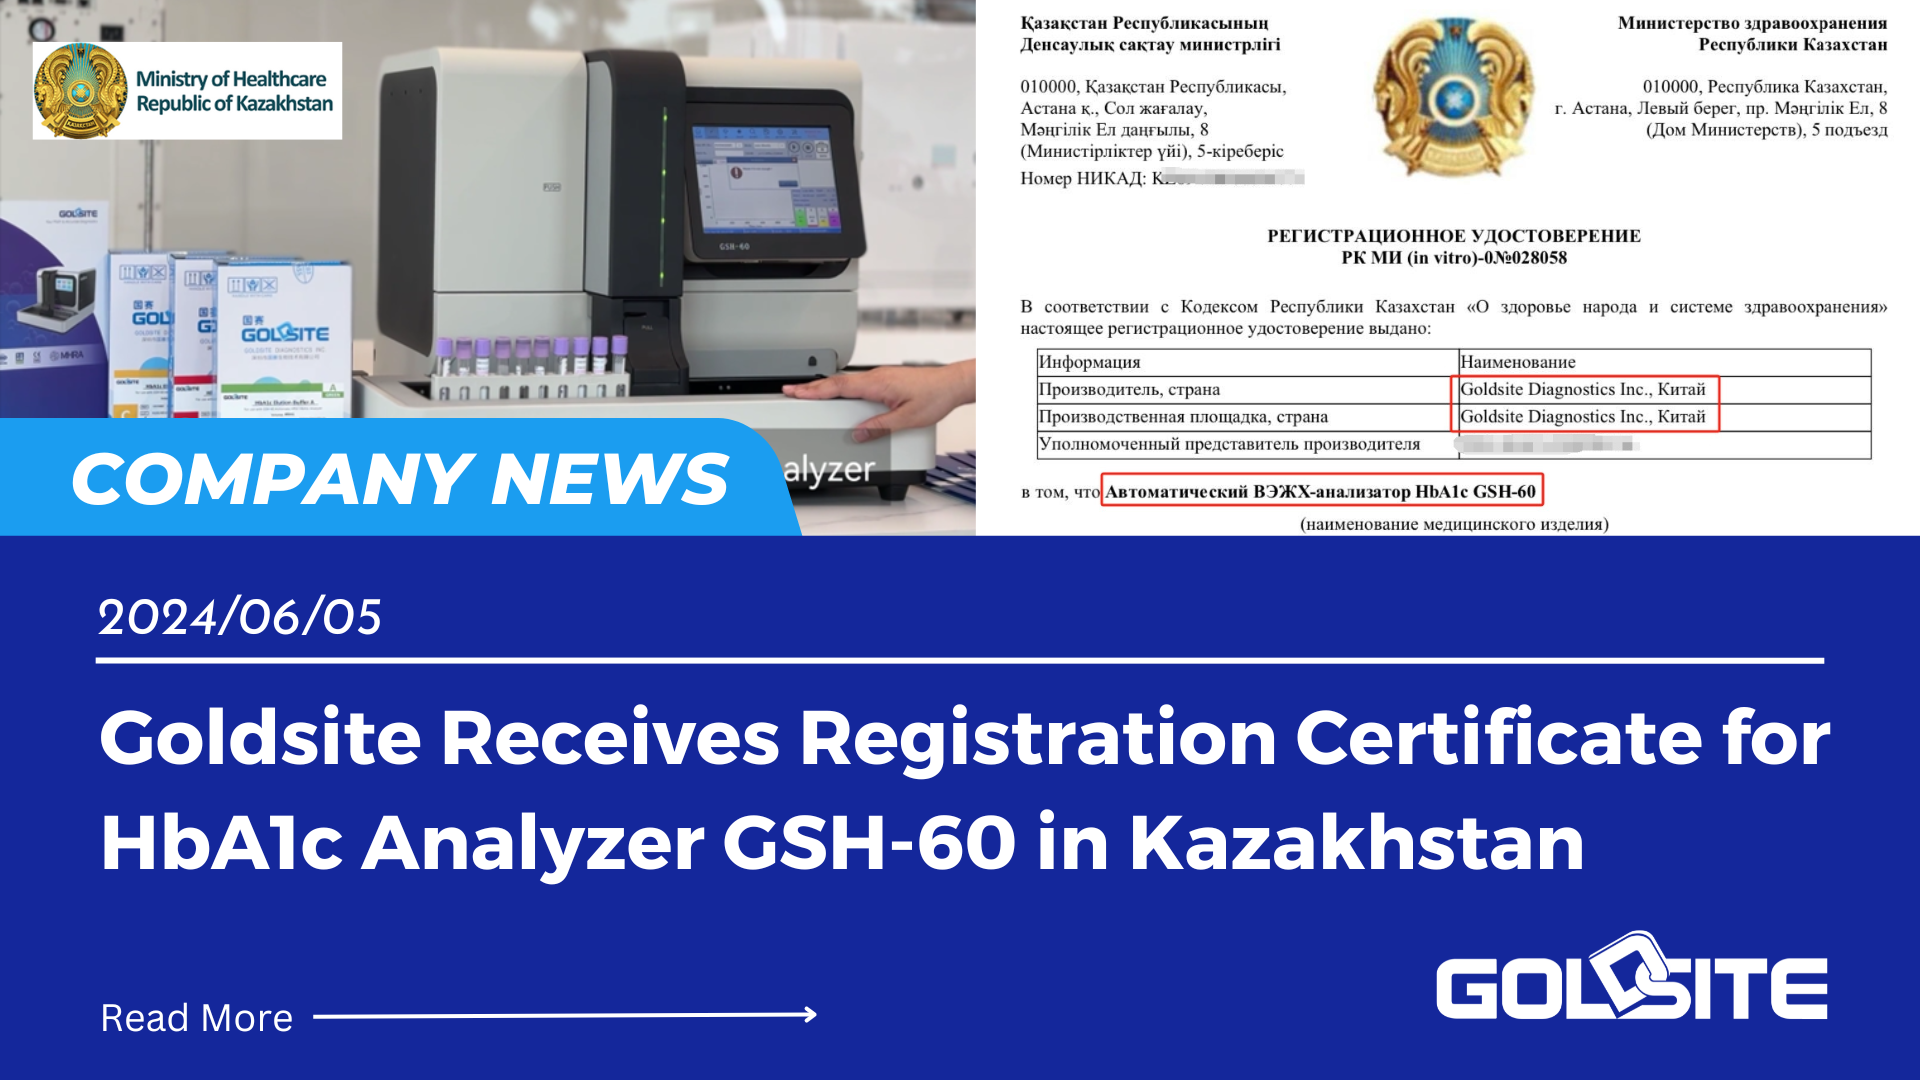 Goldsite Recebe Certificado de Registro para Analisador HbA1c GSH-60 no Cazaquistão